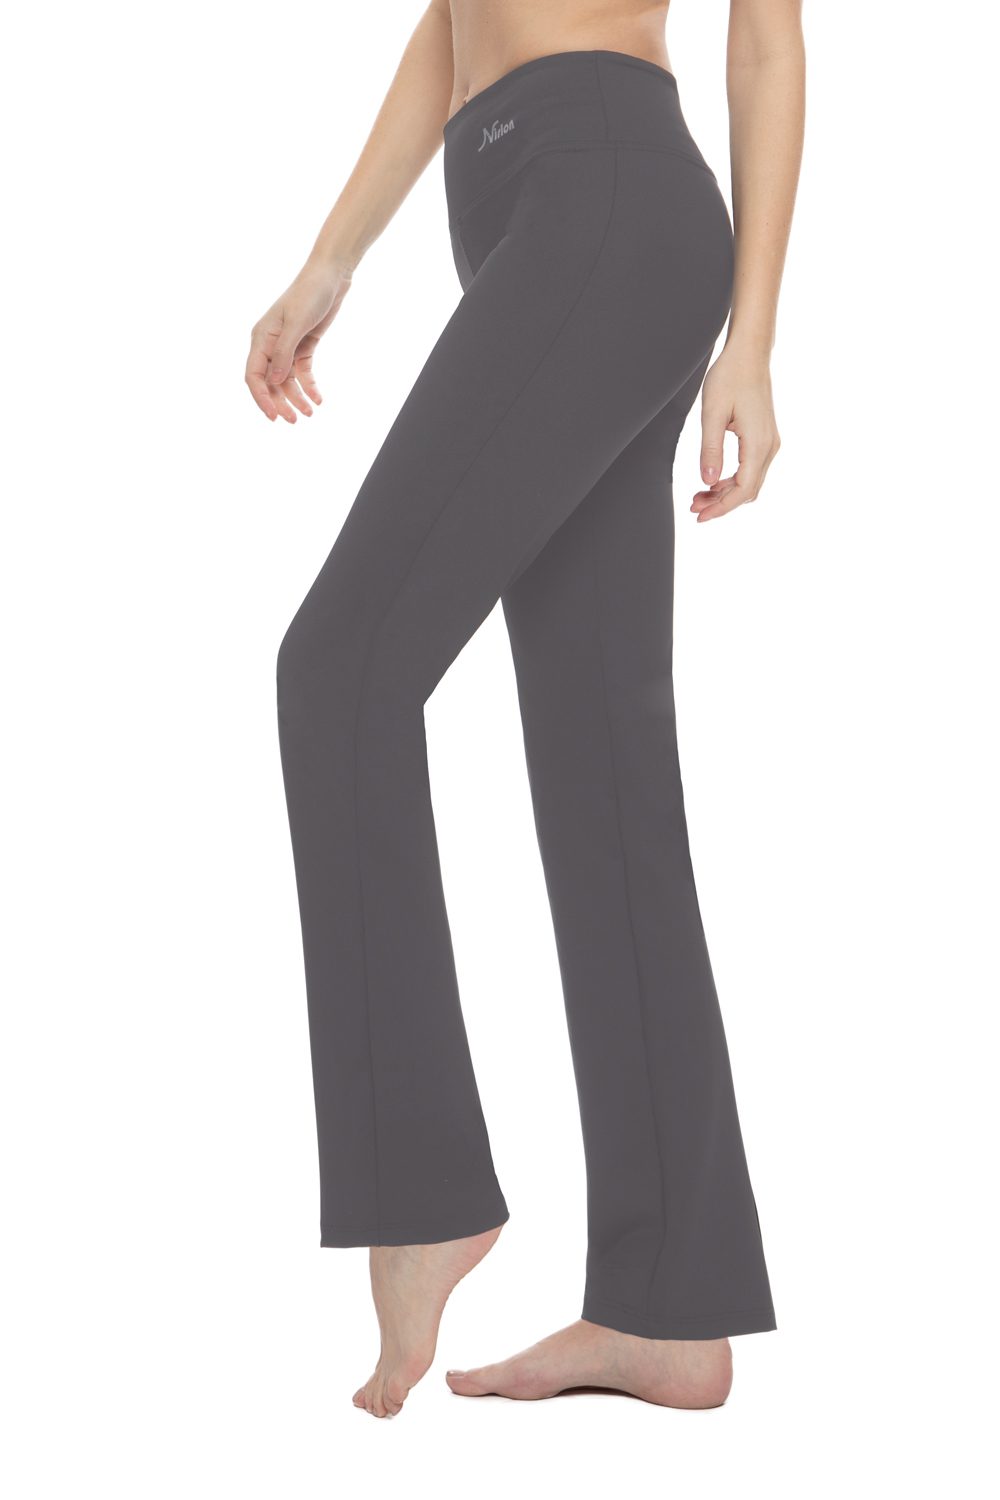 Bootcut Yoga Pants for Women – Graphite – Nirlon